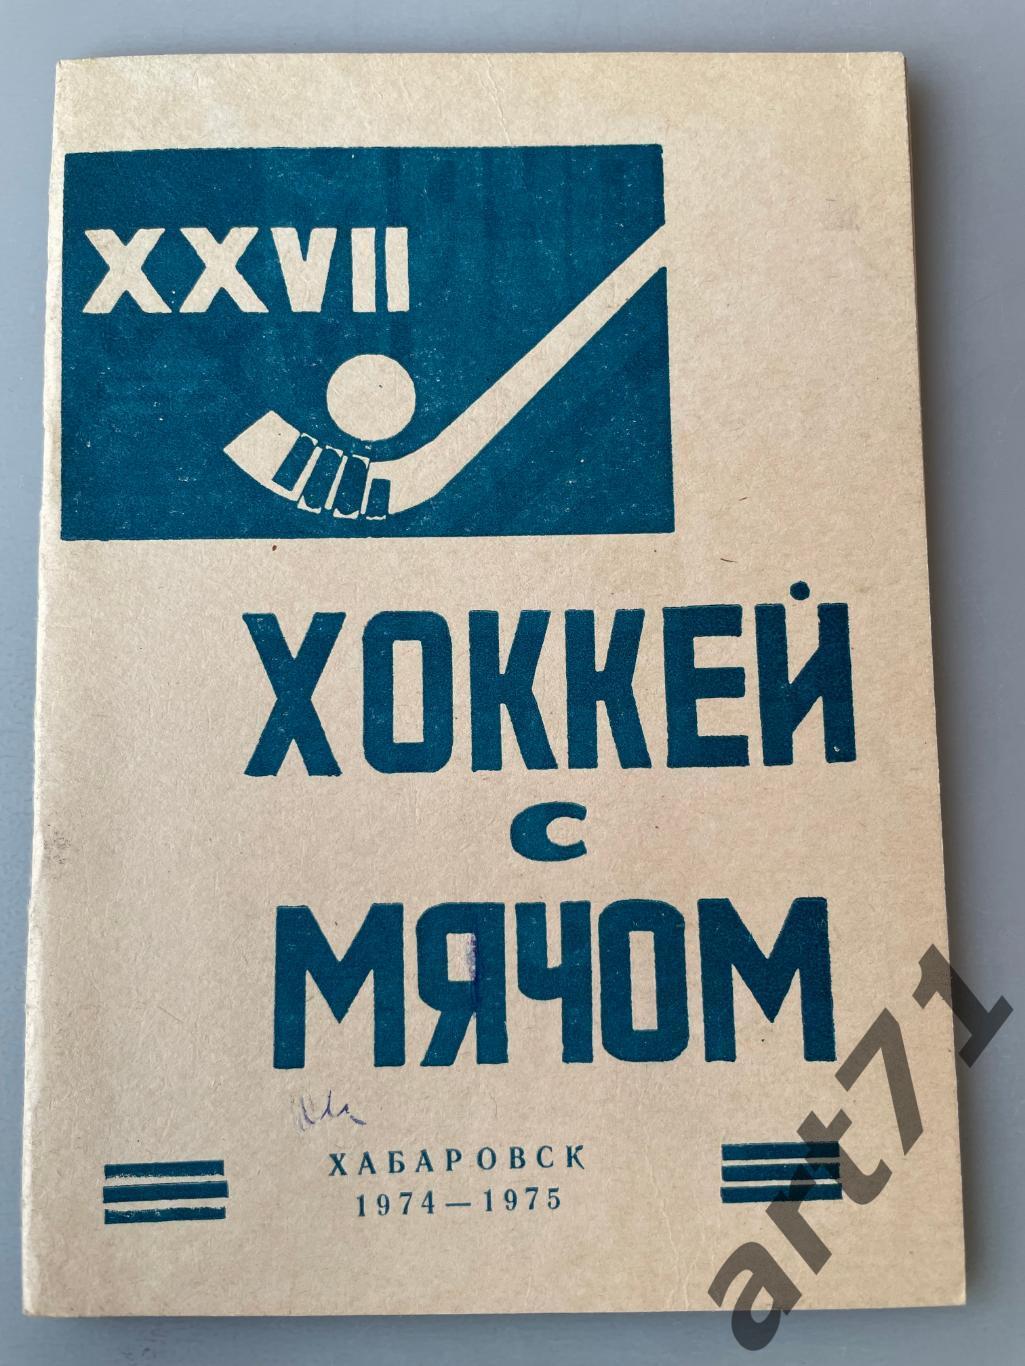 Хабаровск 1974 -1975 календарь-справочник Хоккей с мячом